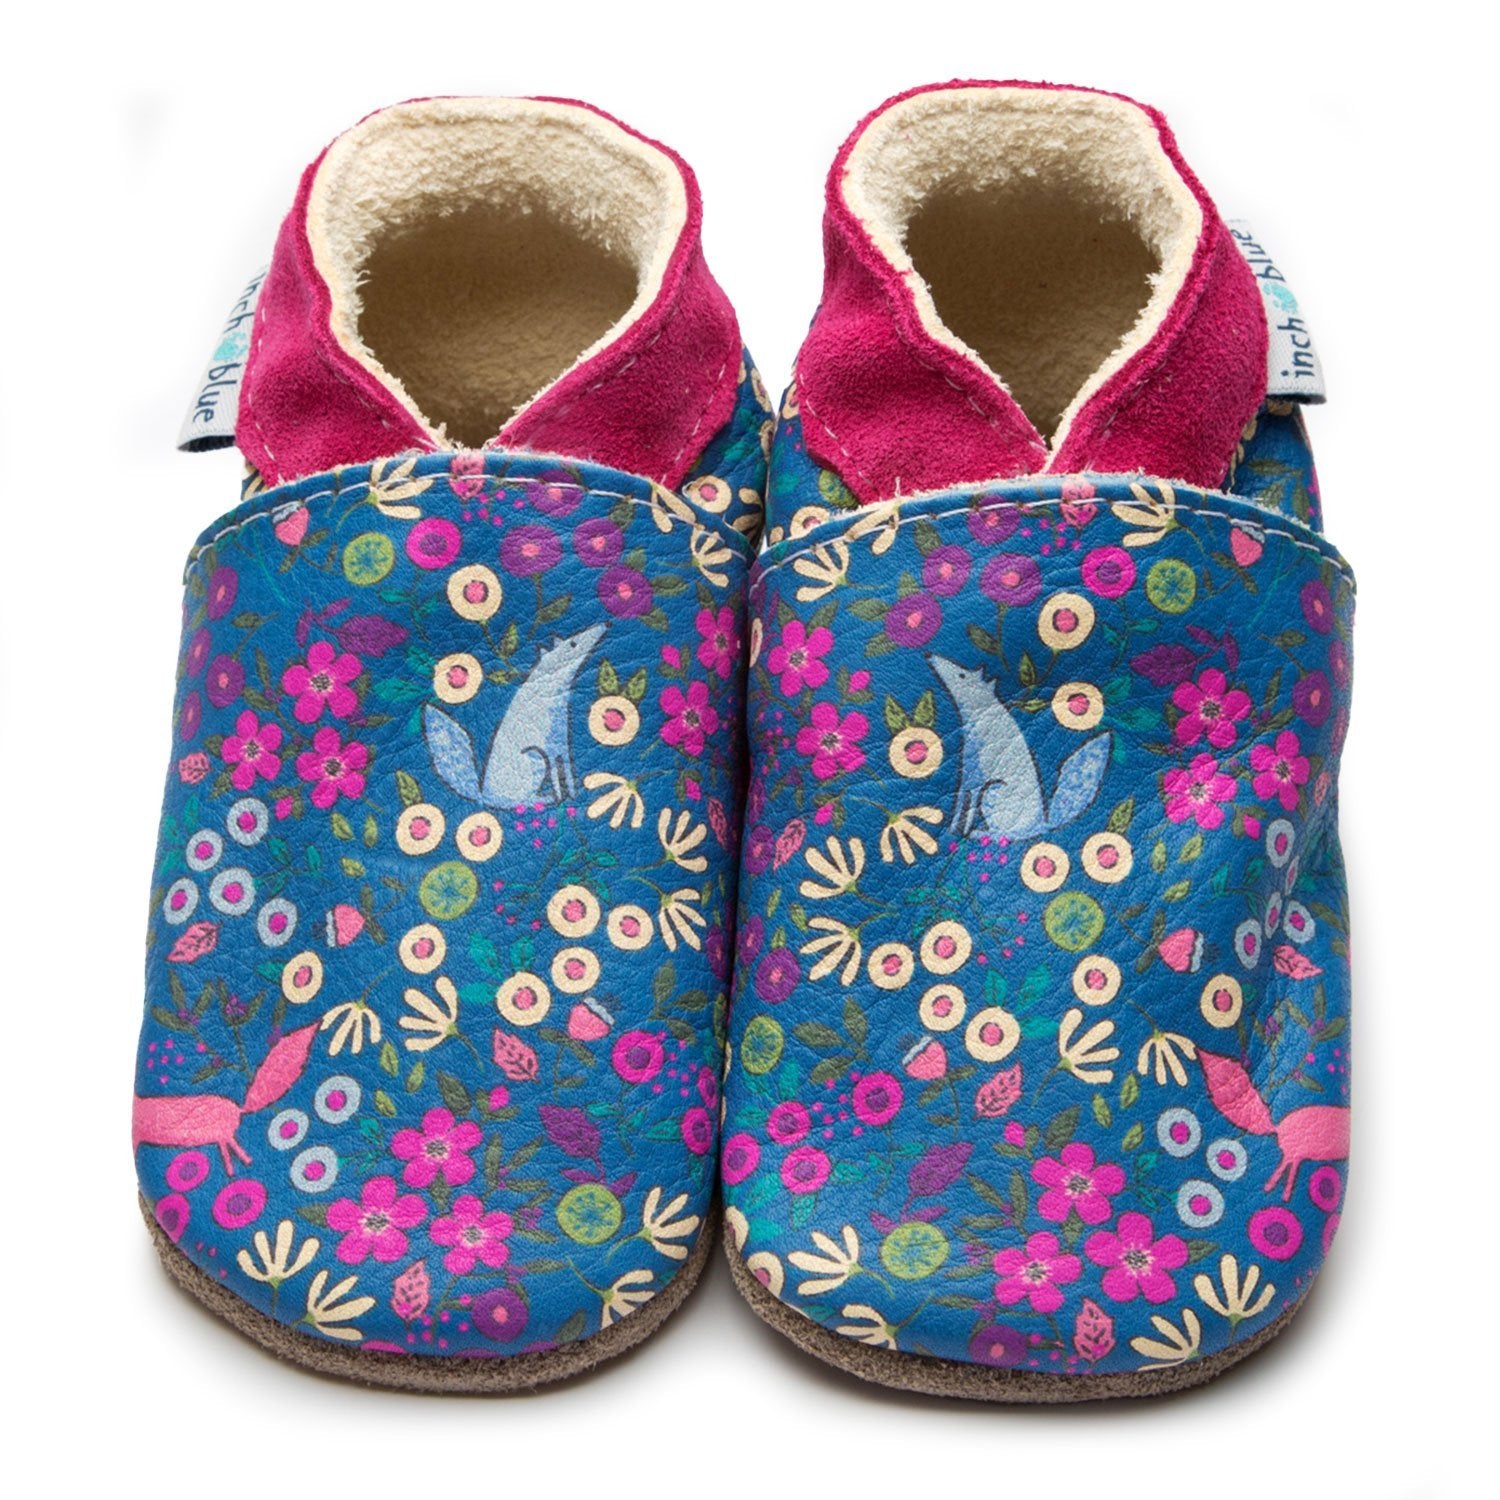 Inch Blue Baby Shoes Meadow Fox 3984 Footwear 0-6M / Multi,6-12M / Multi,12-18M / Multi